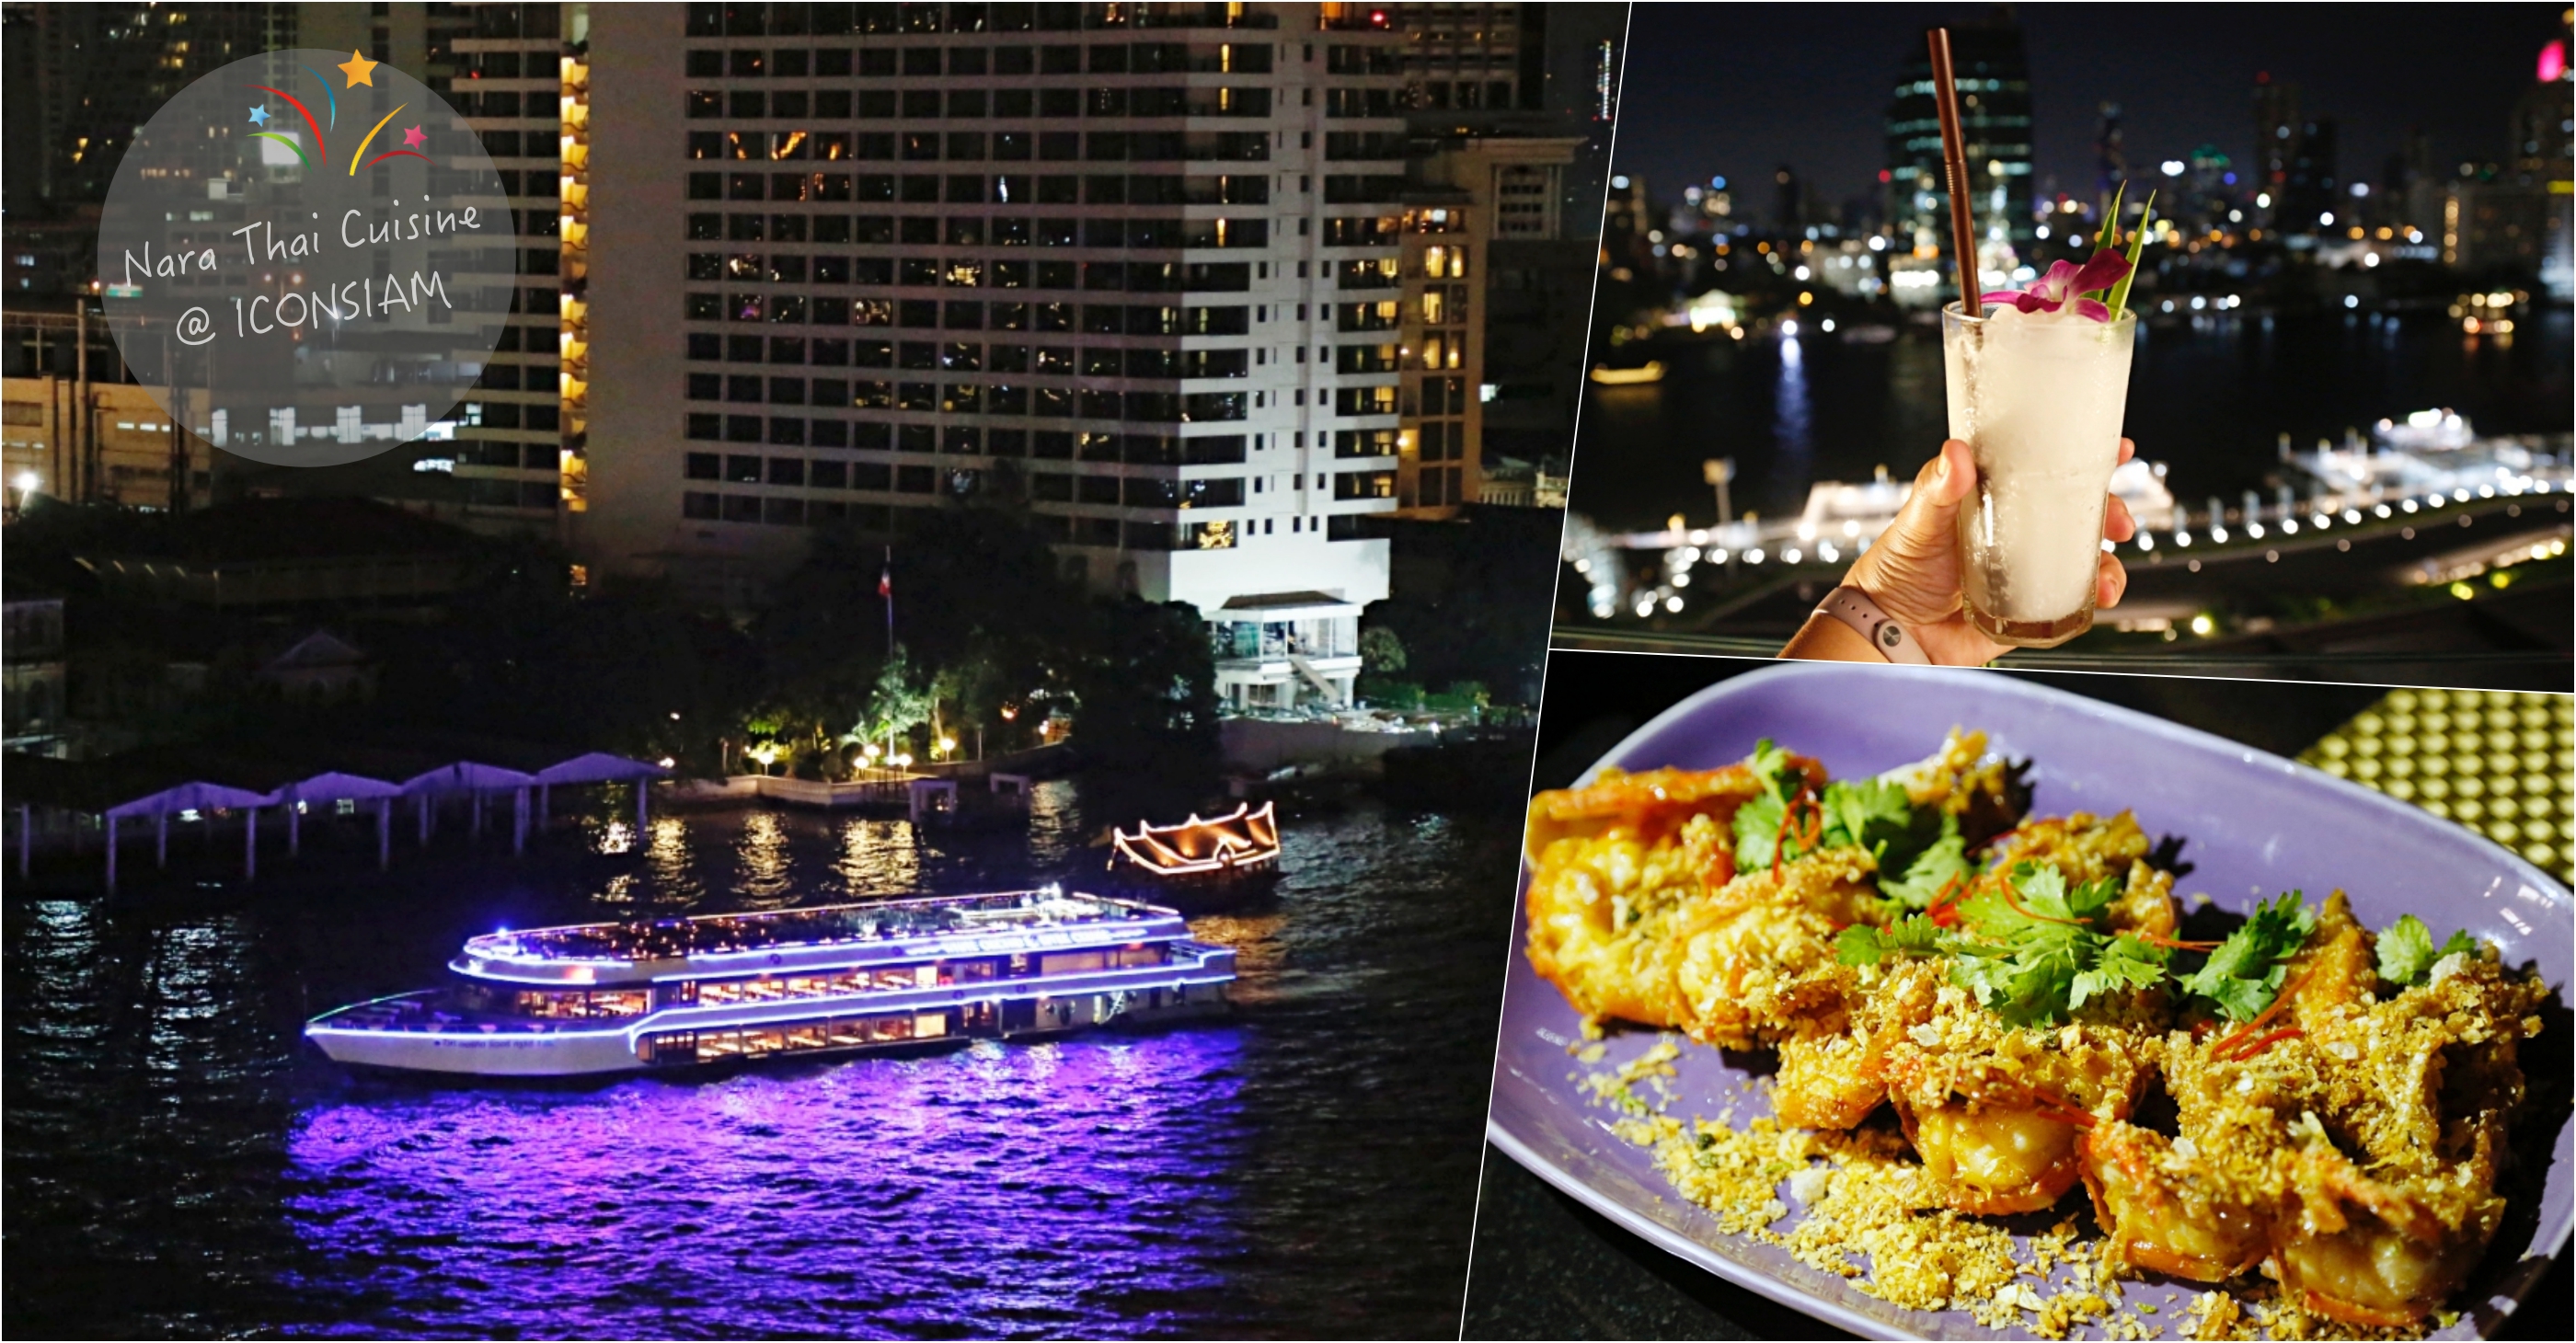 [曼谷美食]Nara Thai Cuisine |泰國最新商場ICONSIAM5樓用餐區~欣賞河岸風光夜景氣氛佳 @VIVIYU小世界